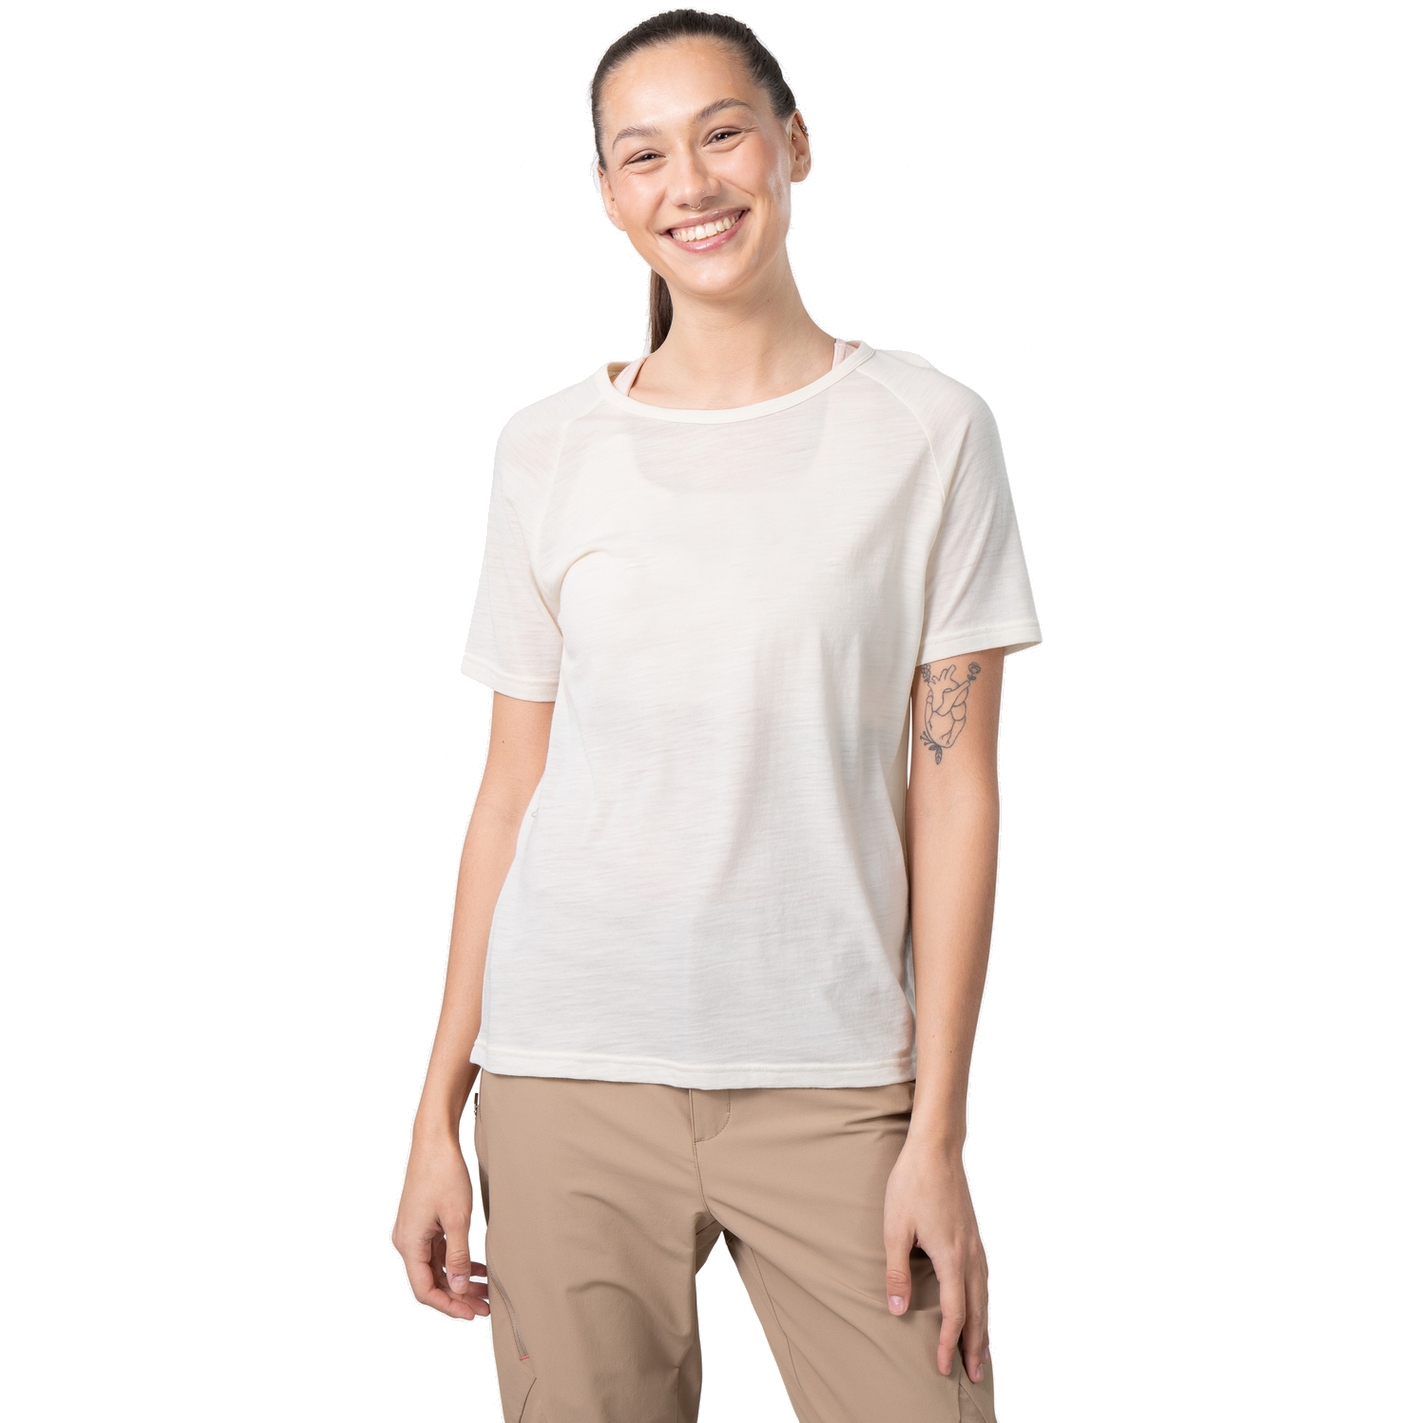 Produktbild von Kari Traa Sanne Wool T-Shirt Damen - light beige